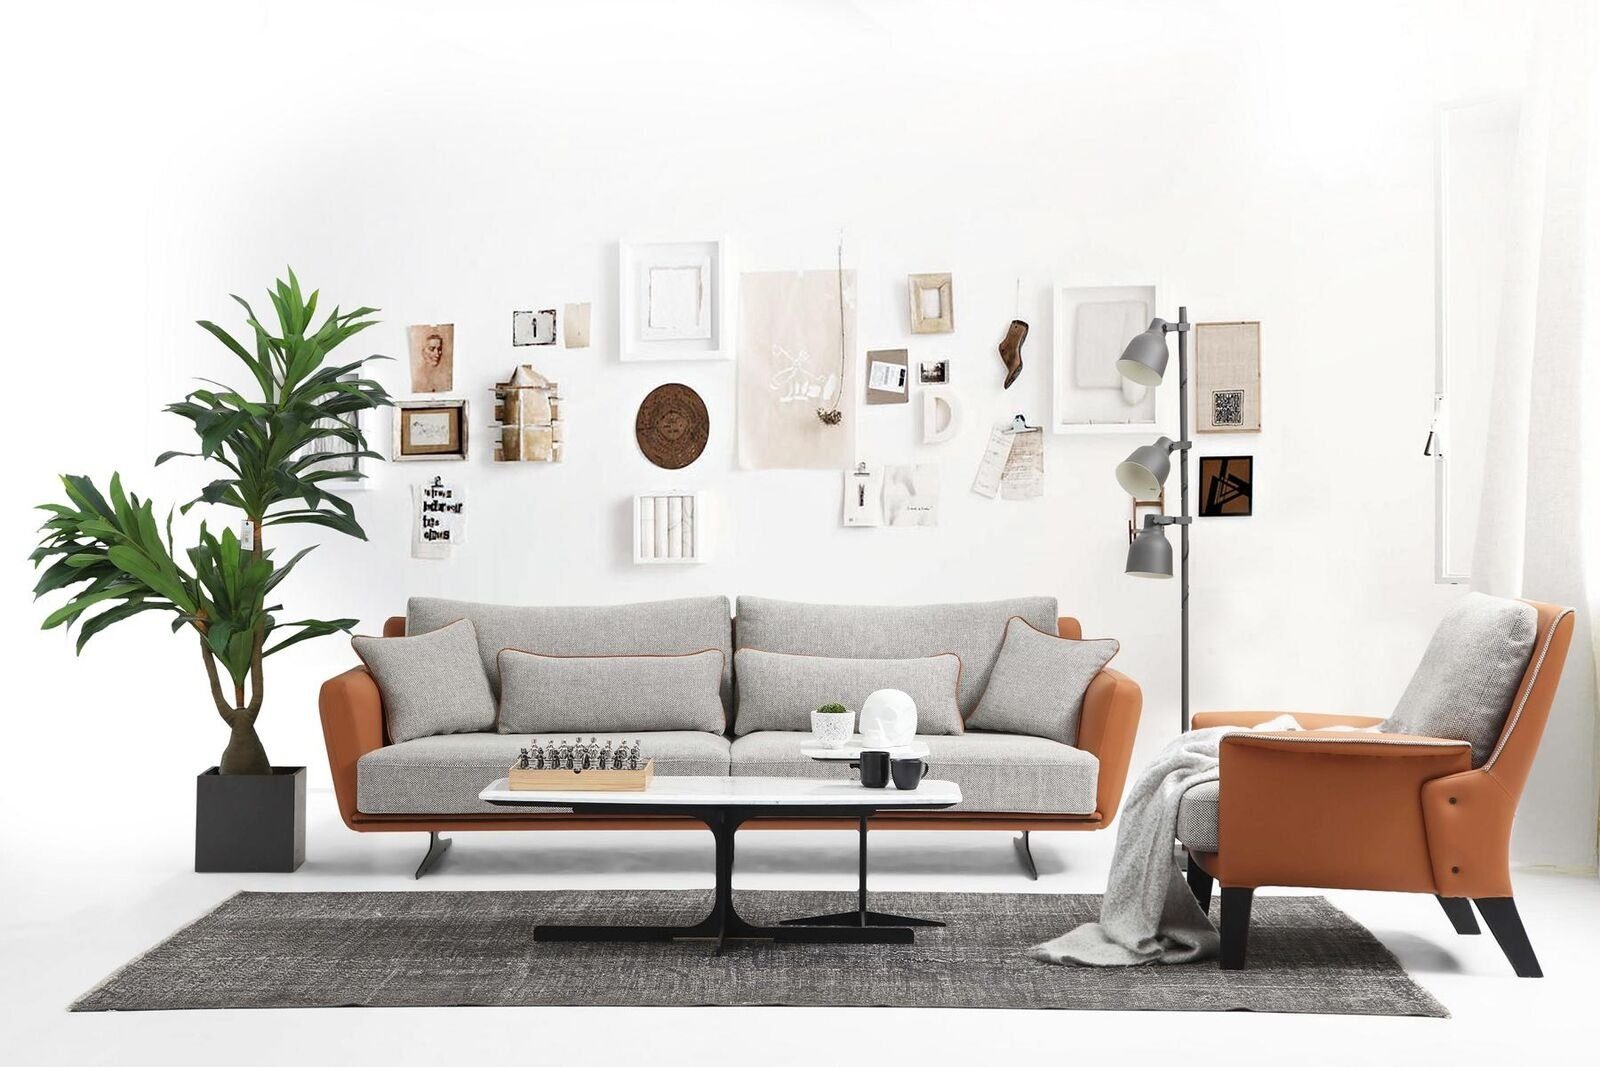 JVmoebel 2-Sitzer Zweisitzer Sofa 2 Orange in Teile, Modern 1 Europa Grau, Made Design Stoff Sitzer Wohnzimmer